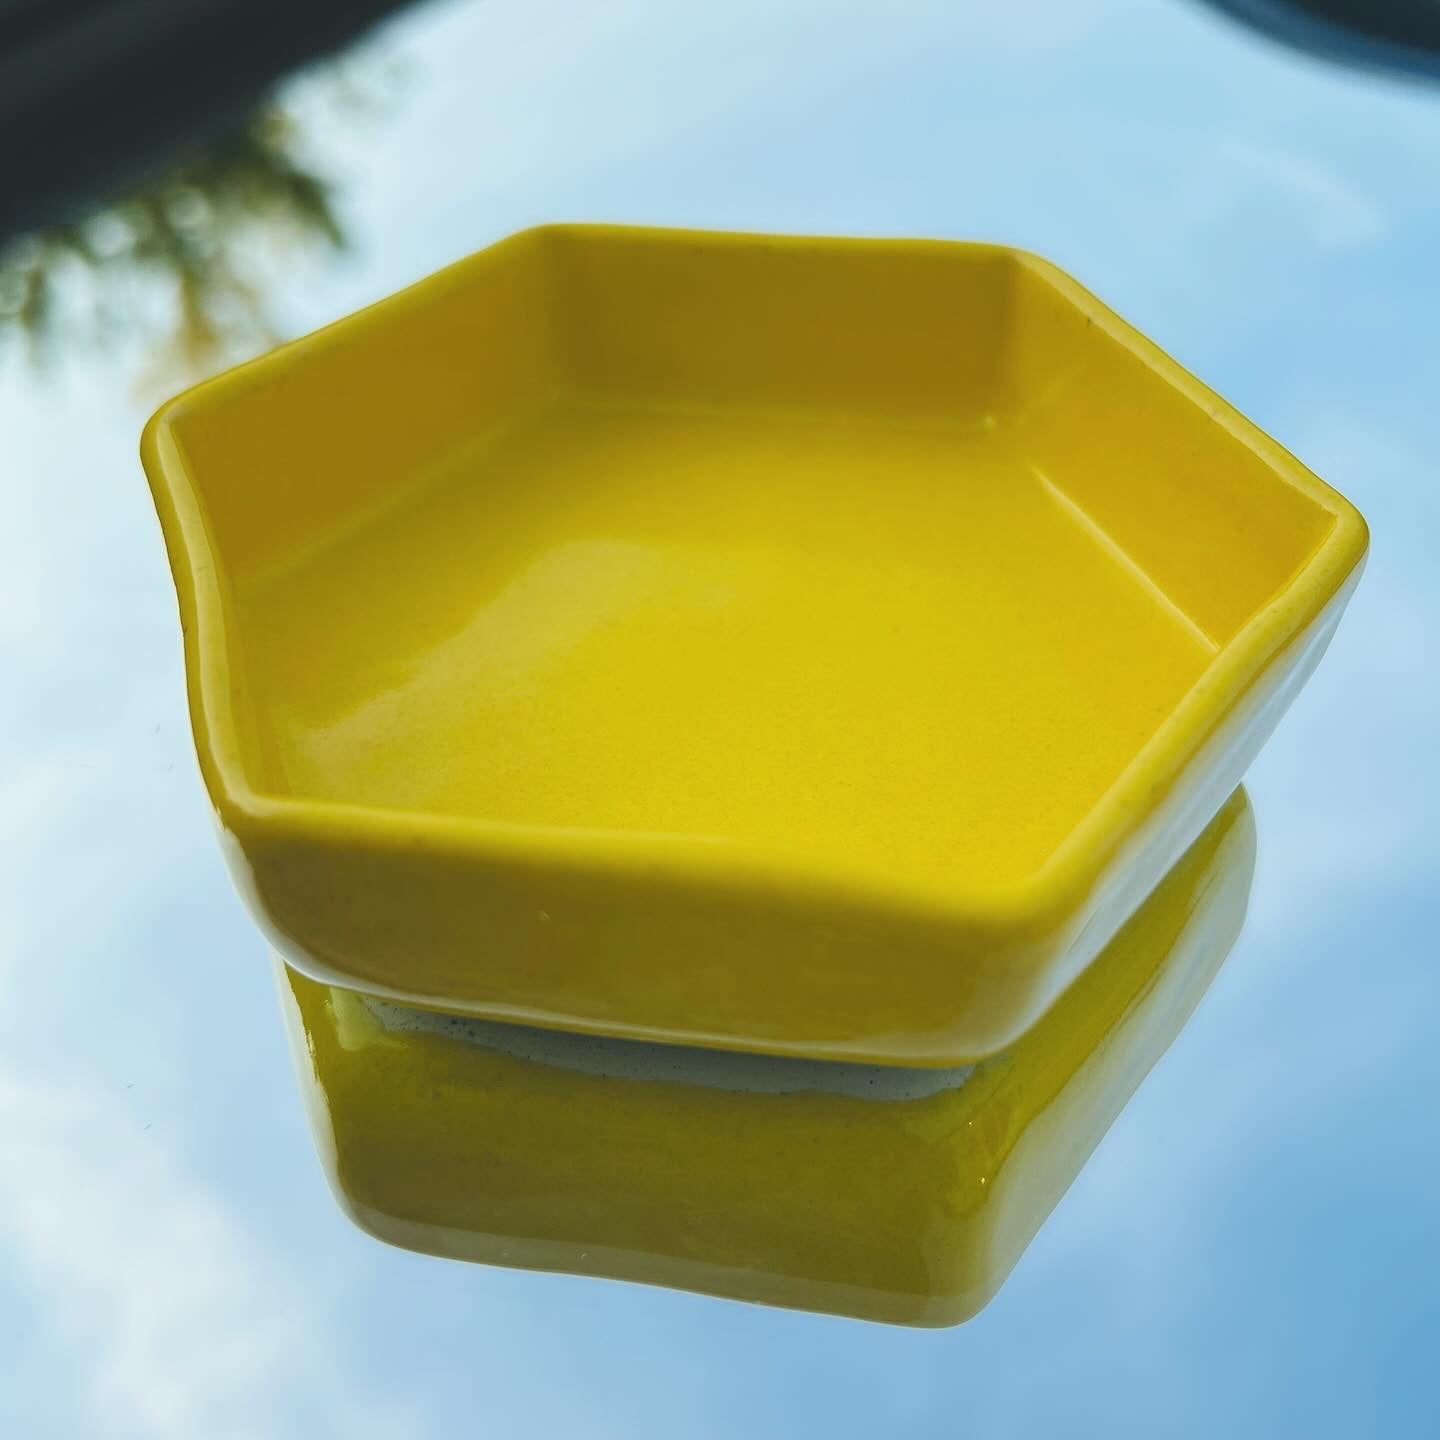 Handmade Pottery Dish - Sunshine Yellow